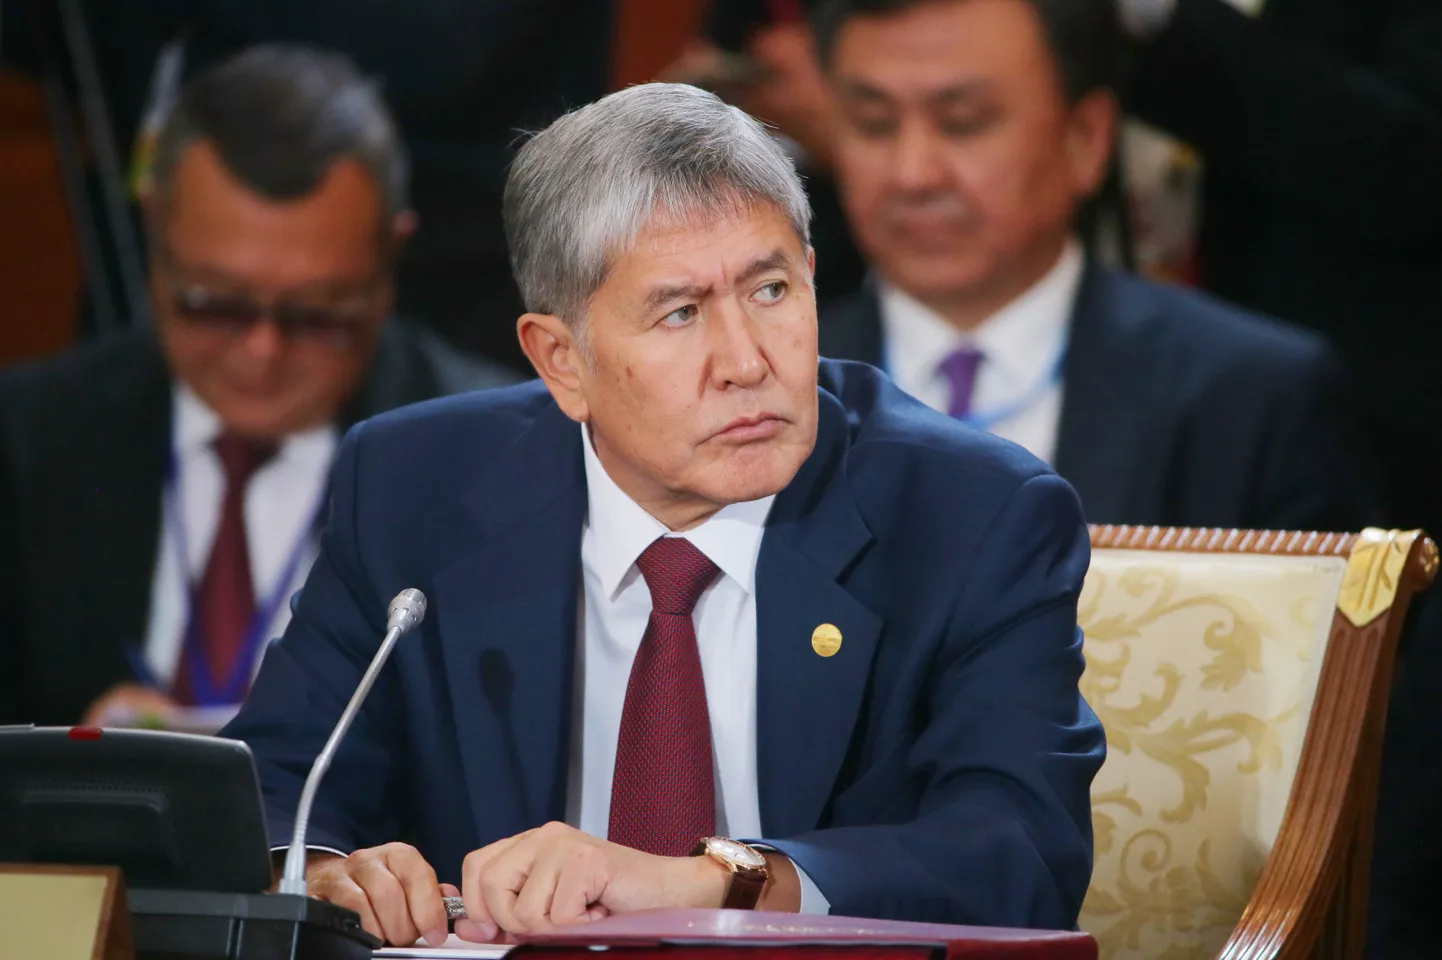 Kõrgõzstani president Almazbek Atambajev.